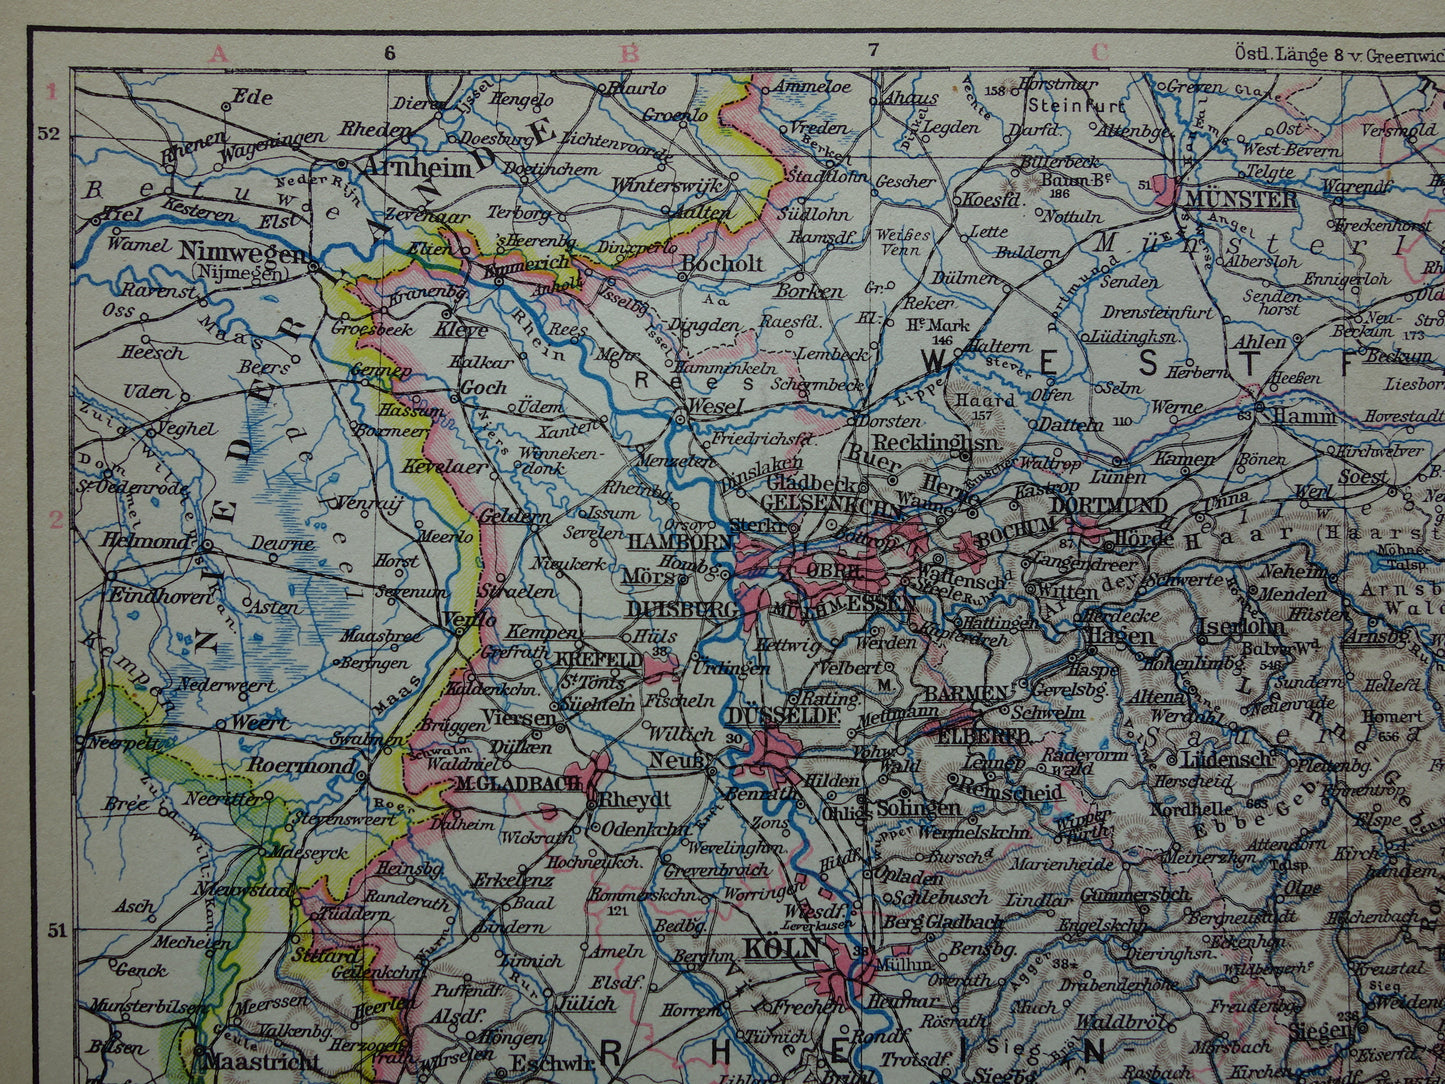 DUITSLAND oude landkaart van Rhijnland 1928 originele vintage Duitse kaart Ruhrgebied Keulen Essen Dortmund Kassel